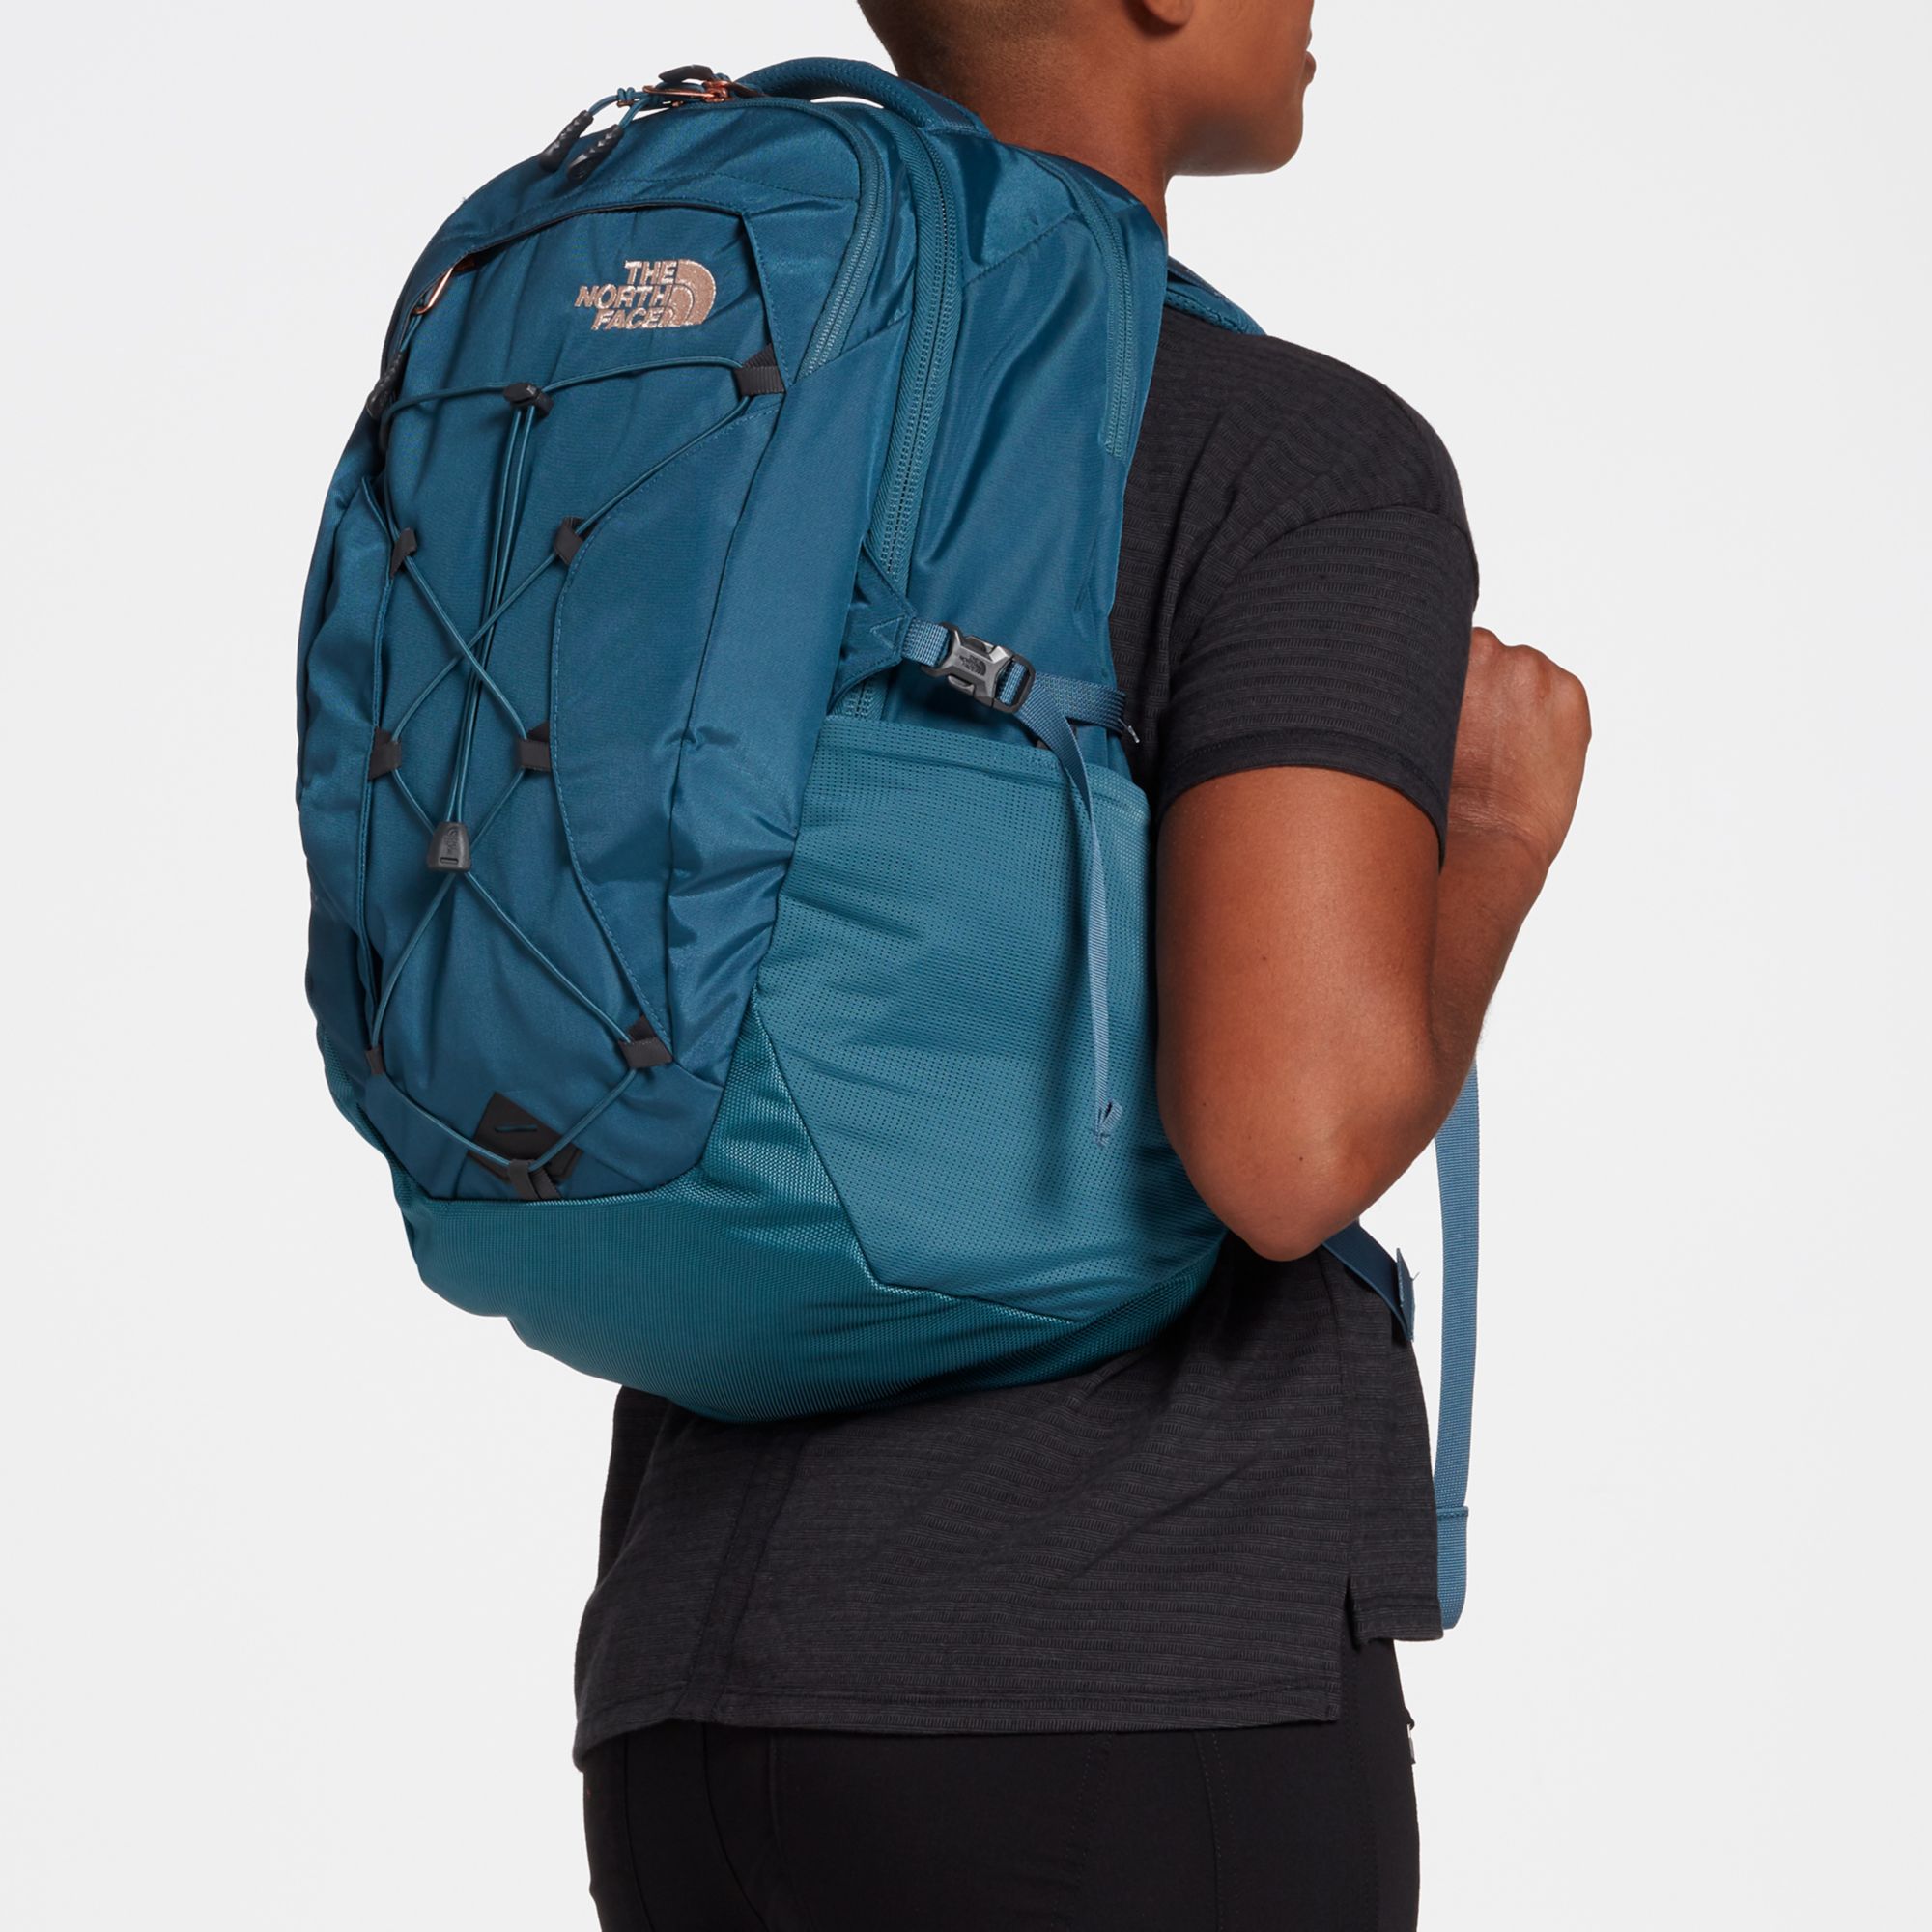 women's borealis luxe backpack